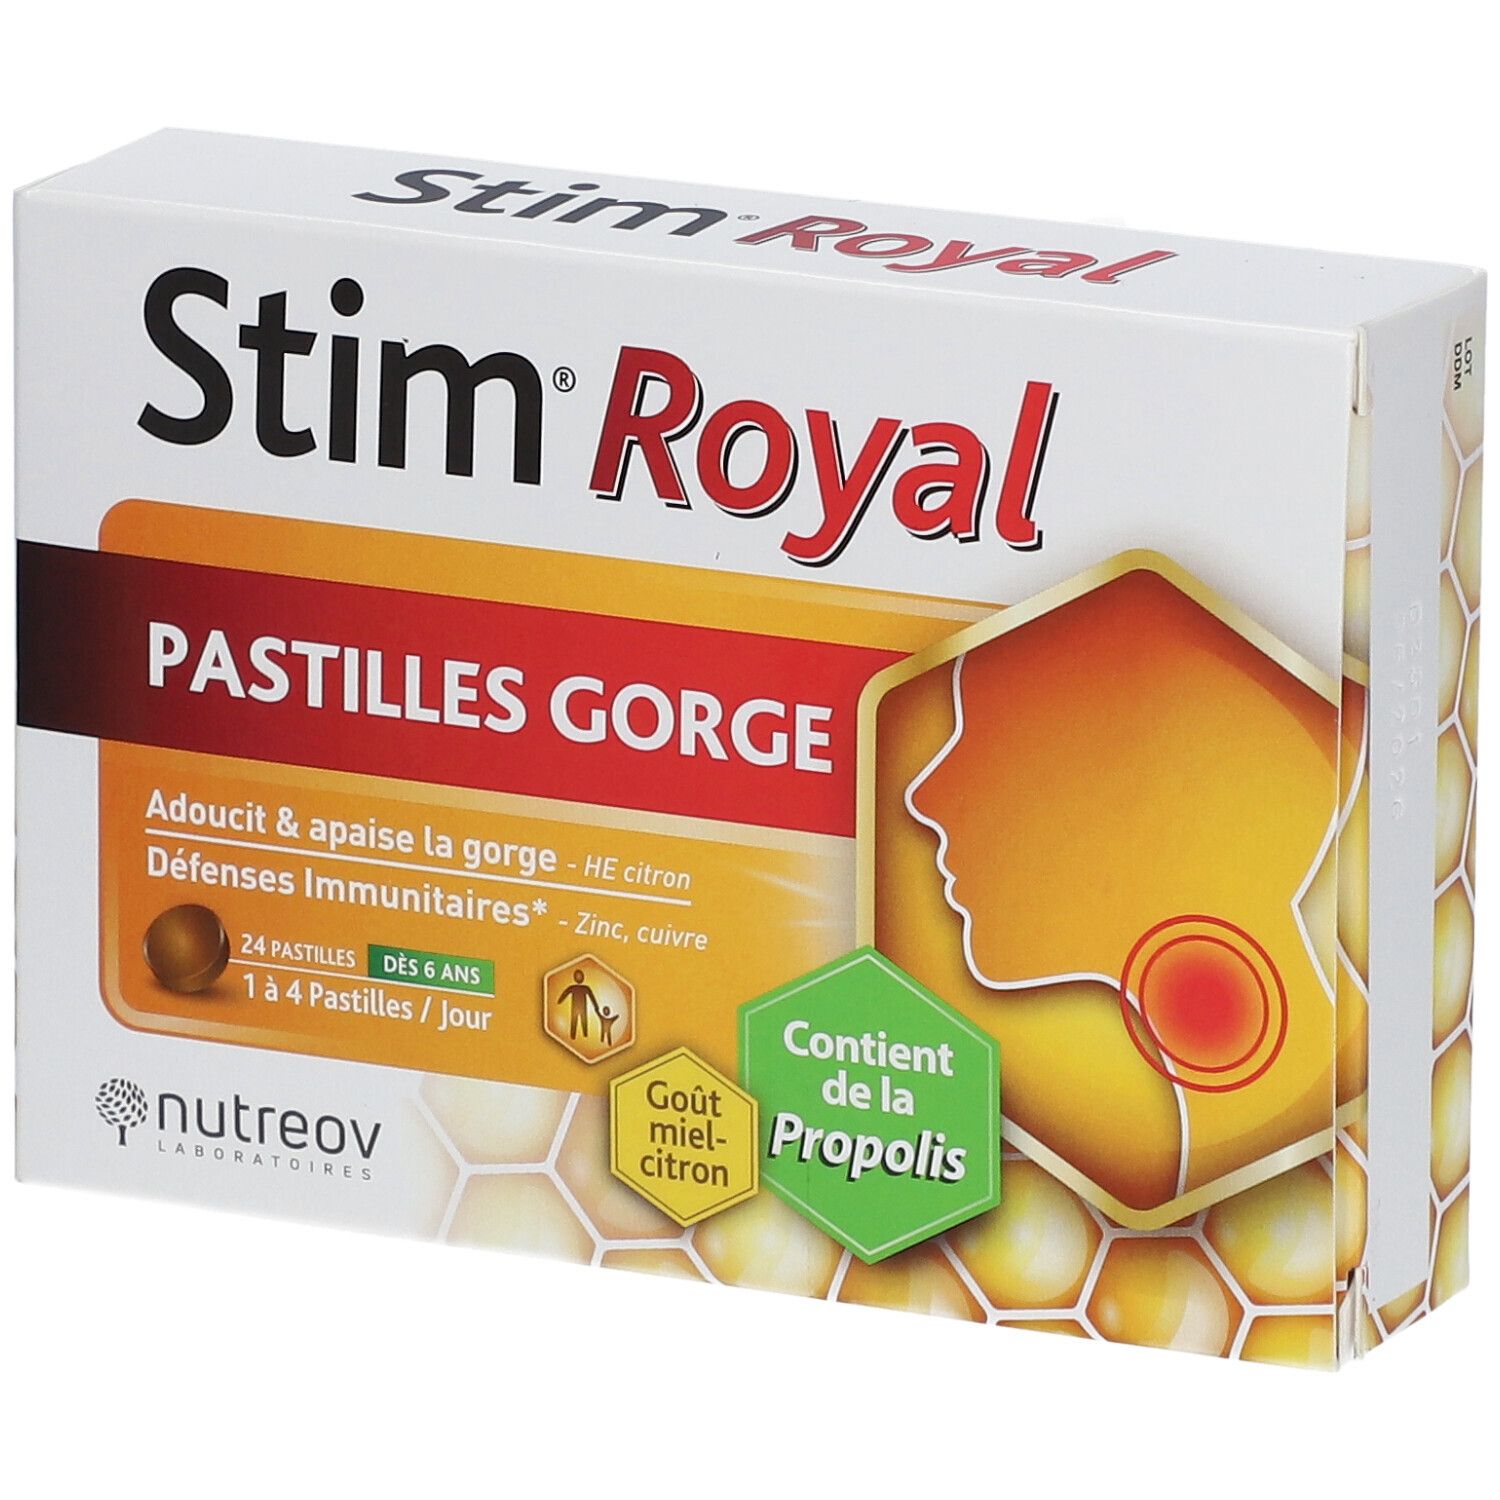 Stim Royal® Pastilles Gorge